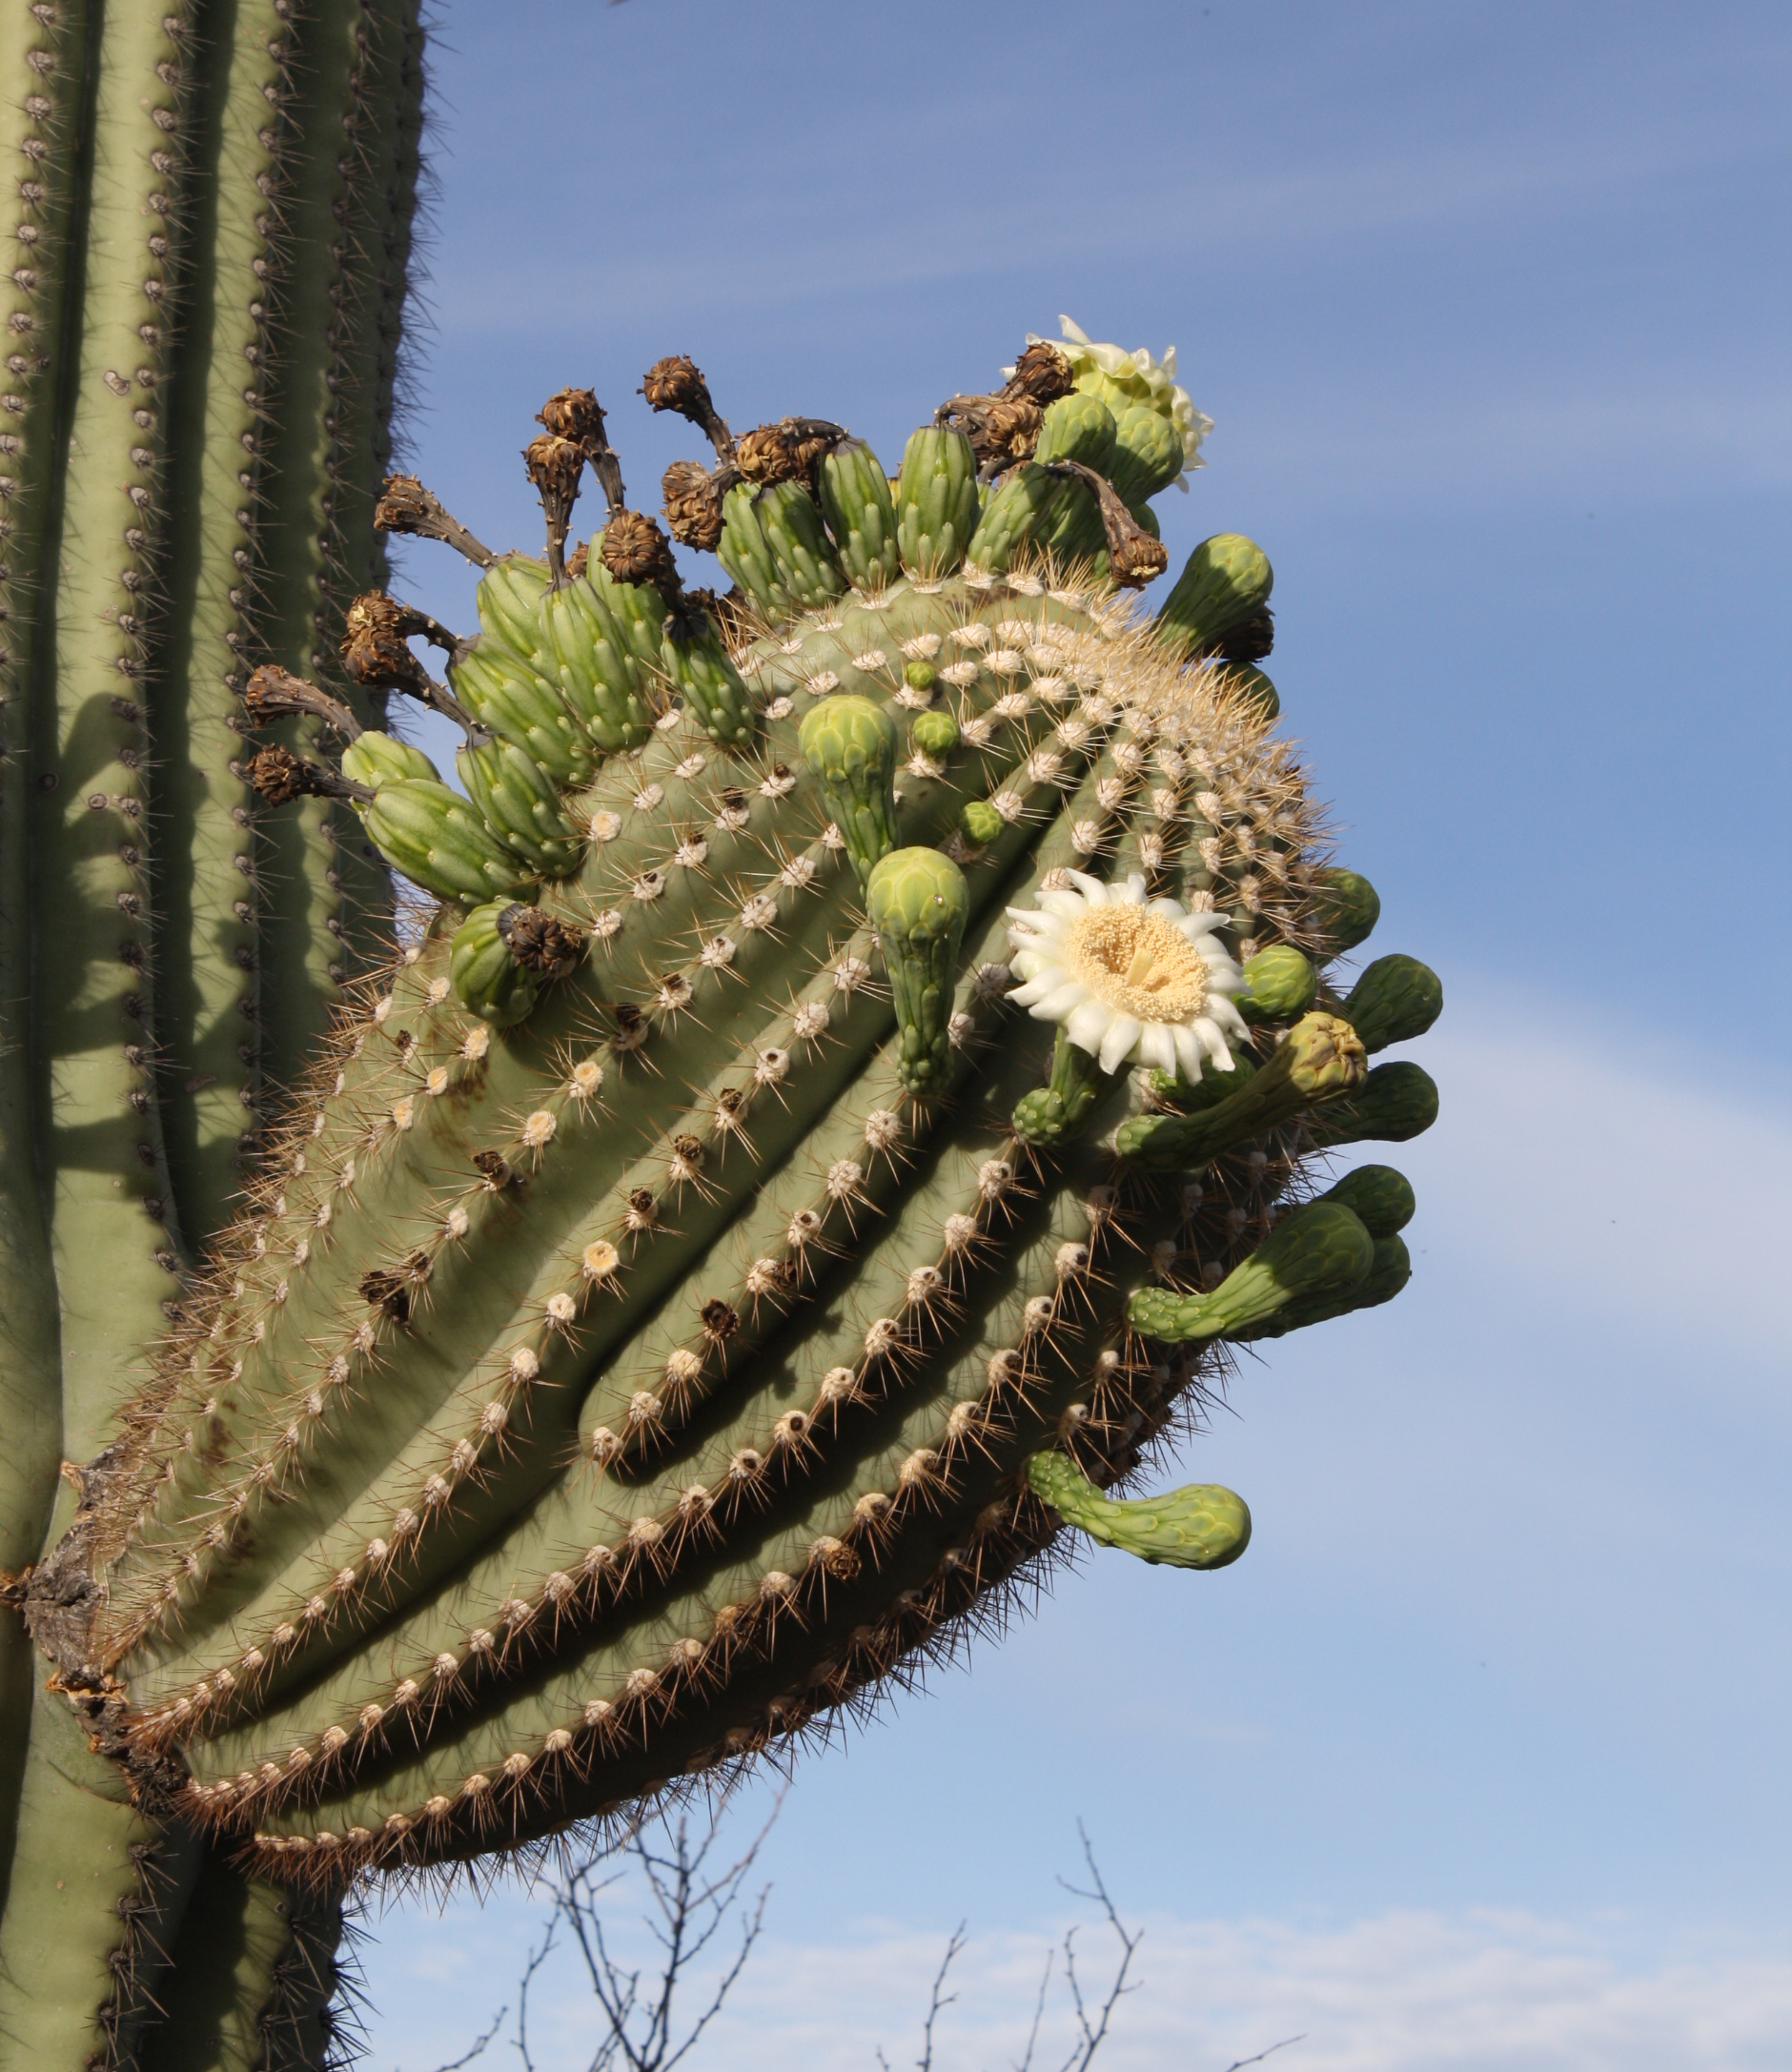 saguaro cacti at saguaro national park (u.s. national park service)